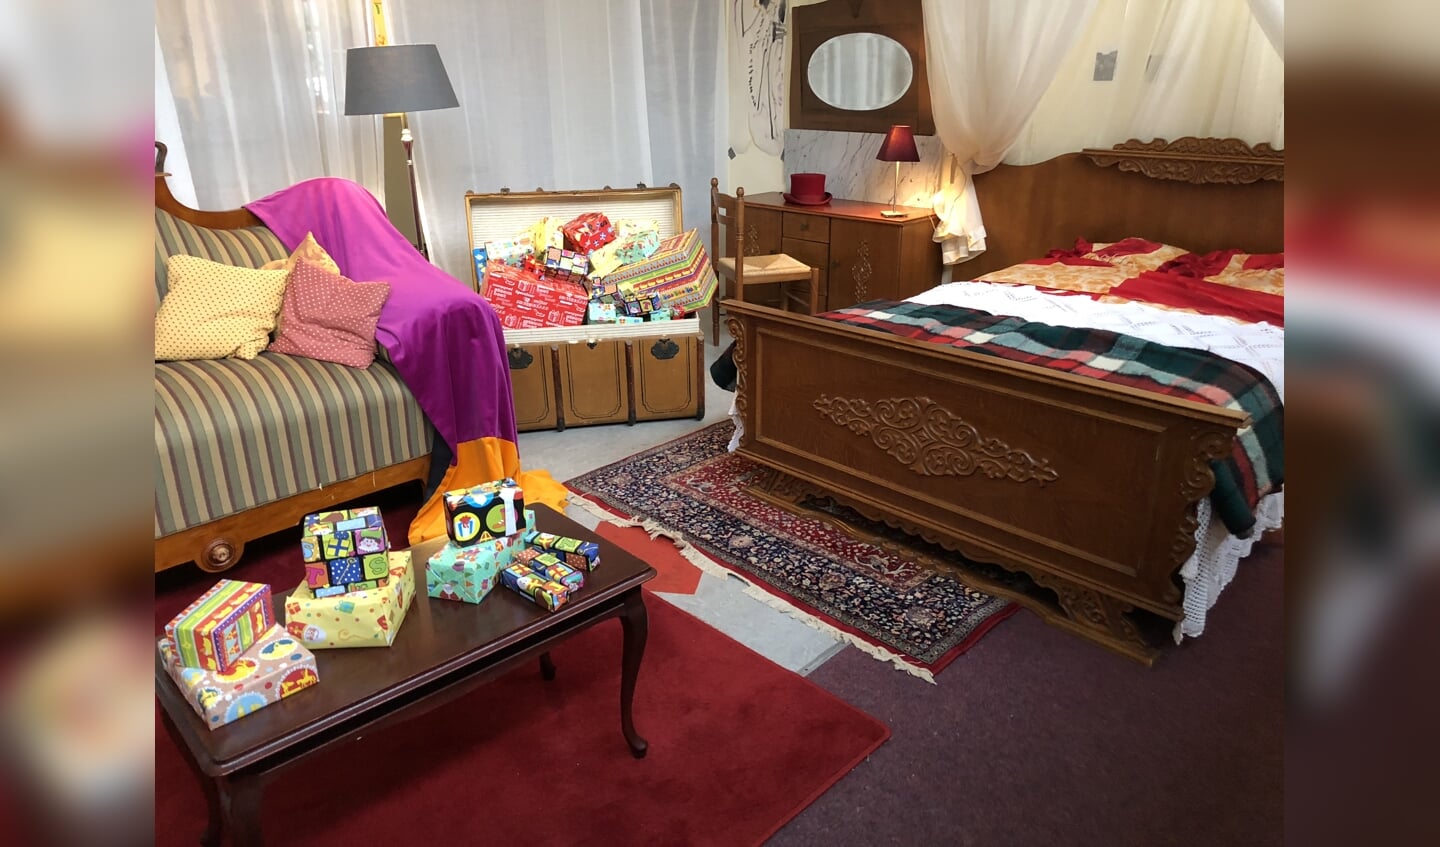 De slaapkamer van Sinterklaas in De Kei is al helemaal ingericht. Foto: PR 